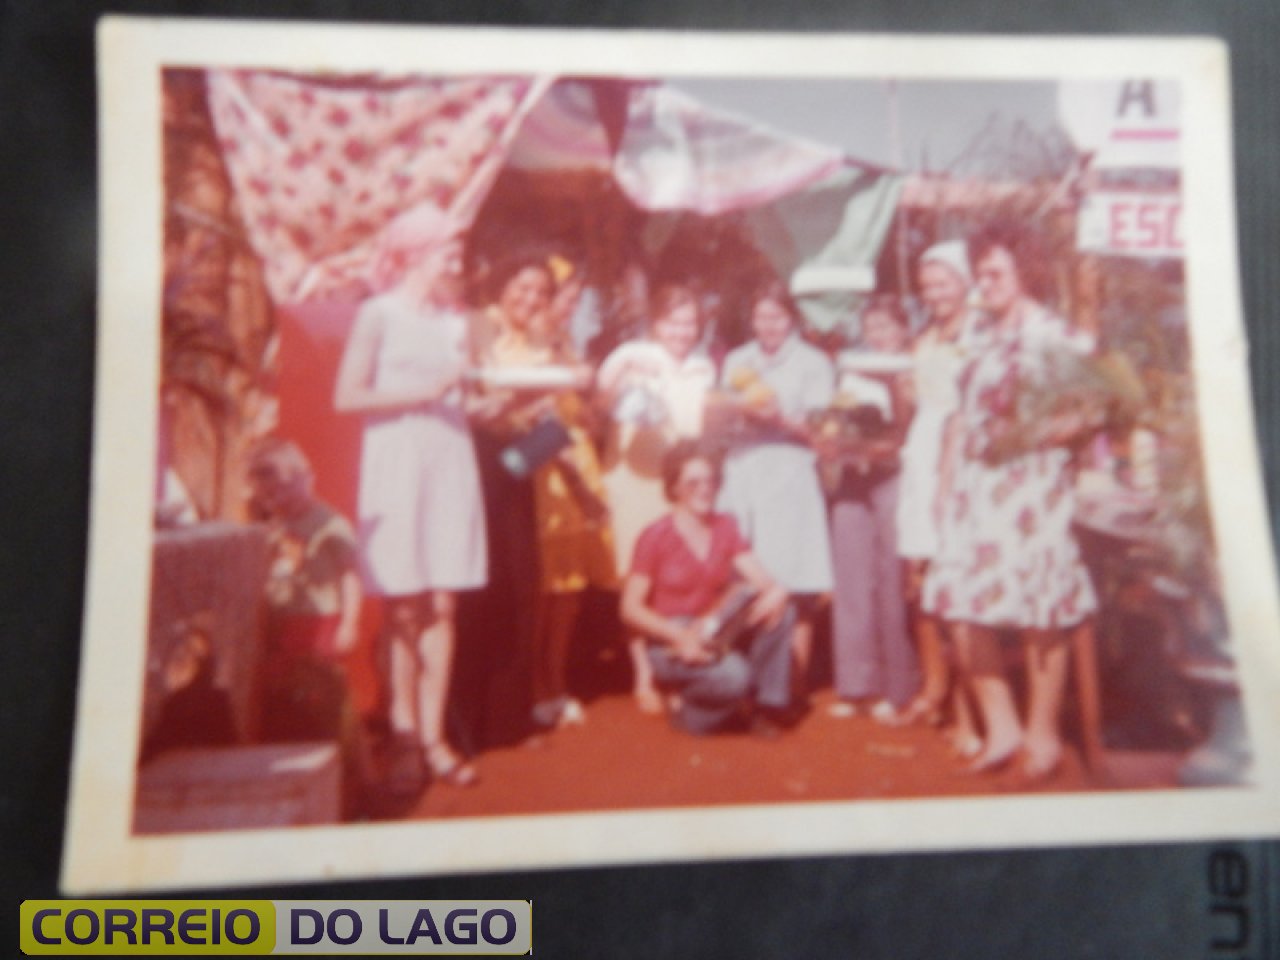 Festa de confraternização entre os funcionários e professores da Escola Marechal Deodoro da Fonseca. Década de 1970. Maria Webber é a 2ª da direita (gorro branco) para esquerda da foto.